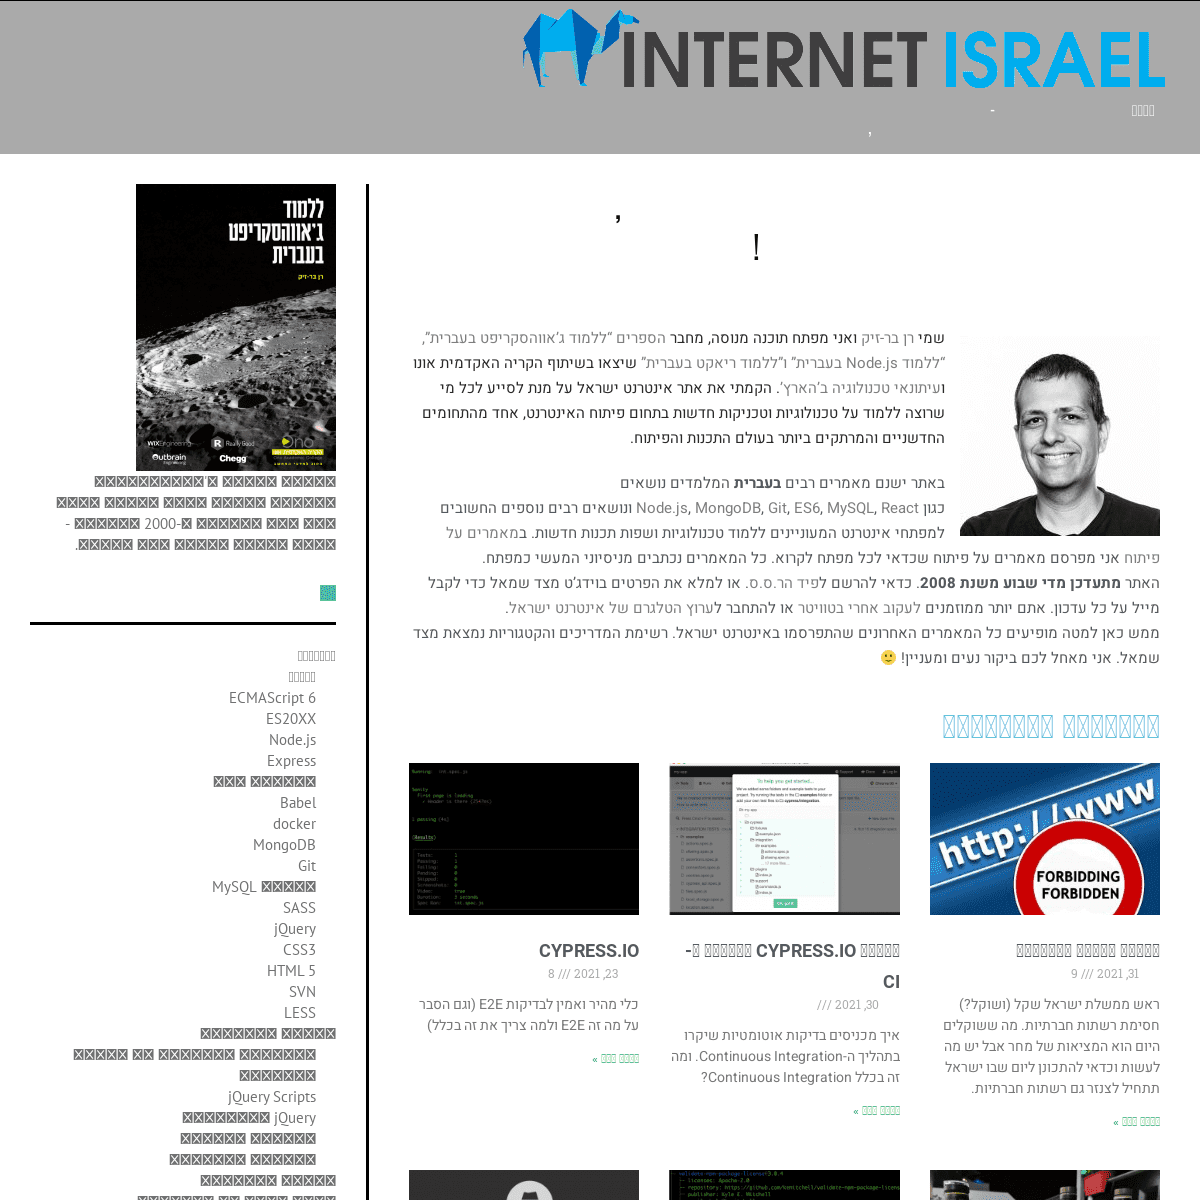 A complete backup of https://internet-israel.com